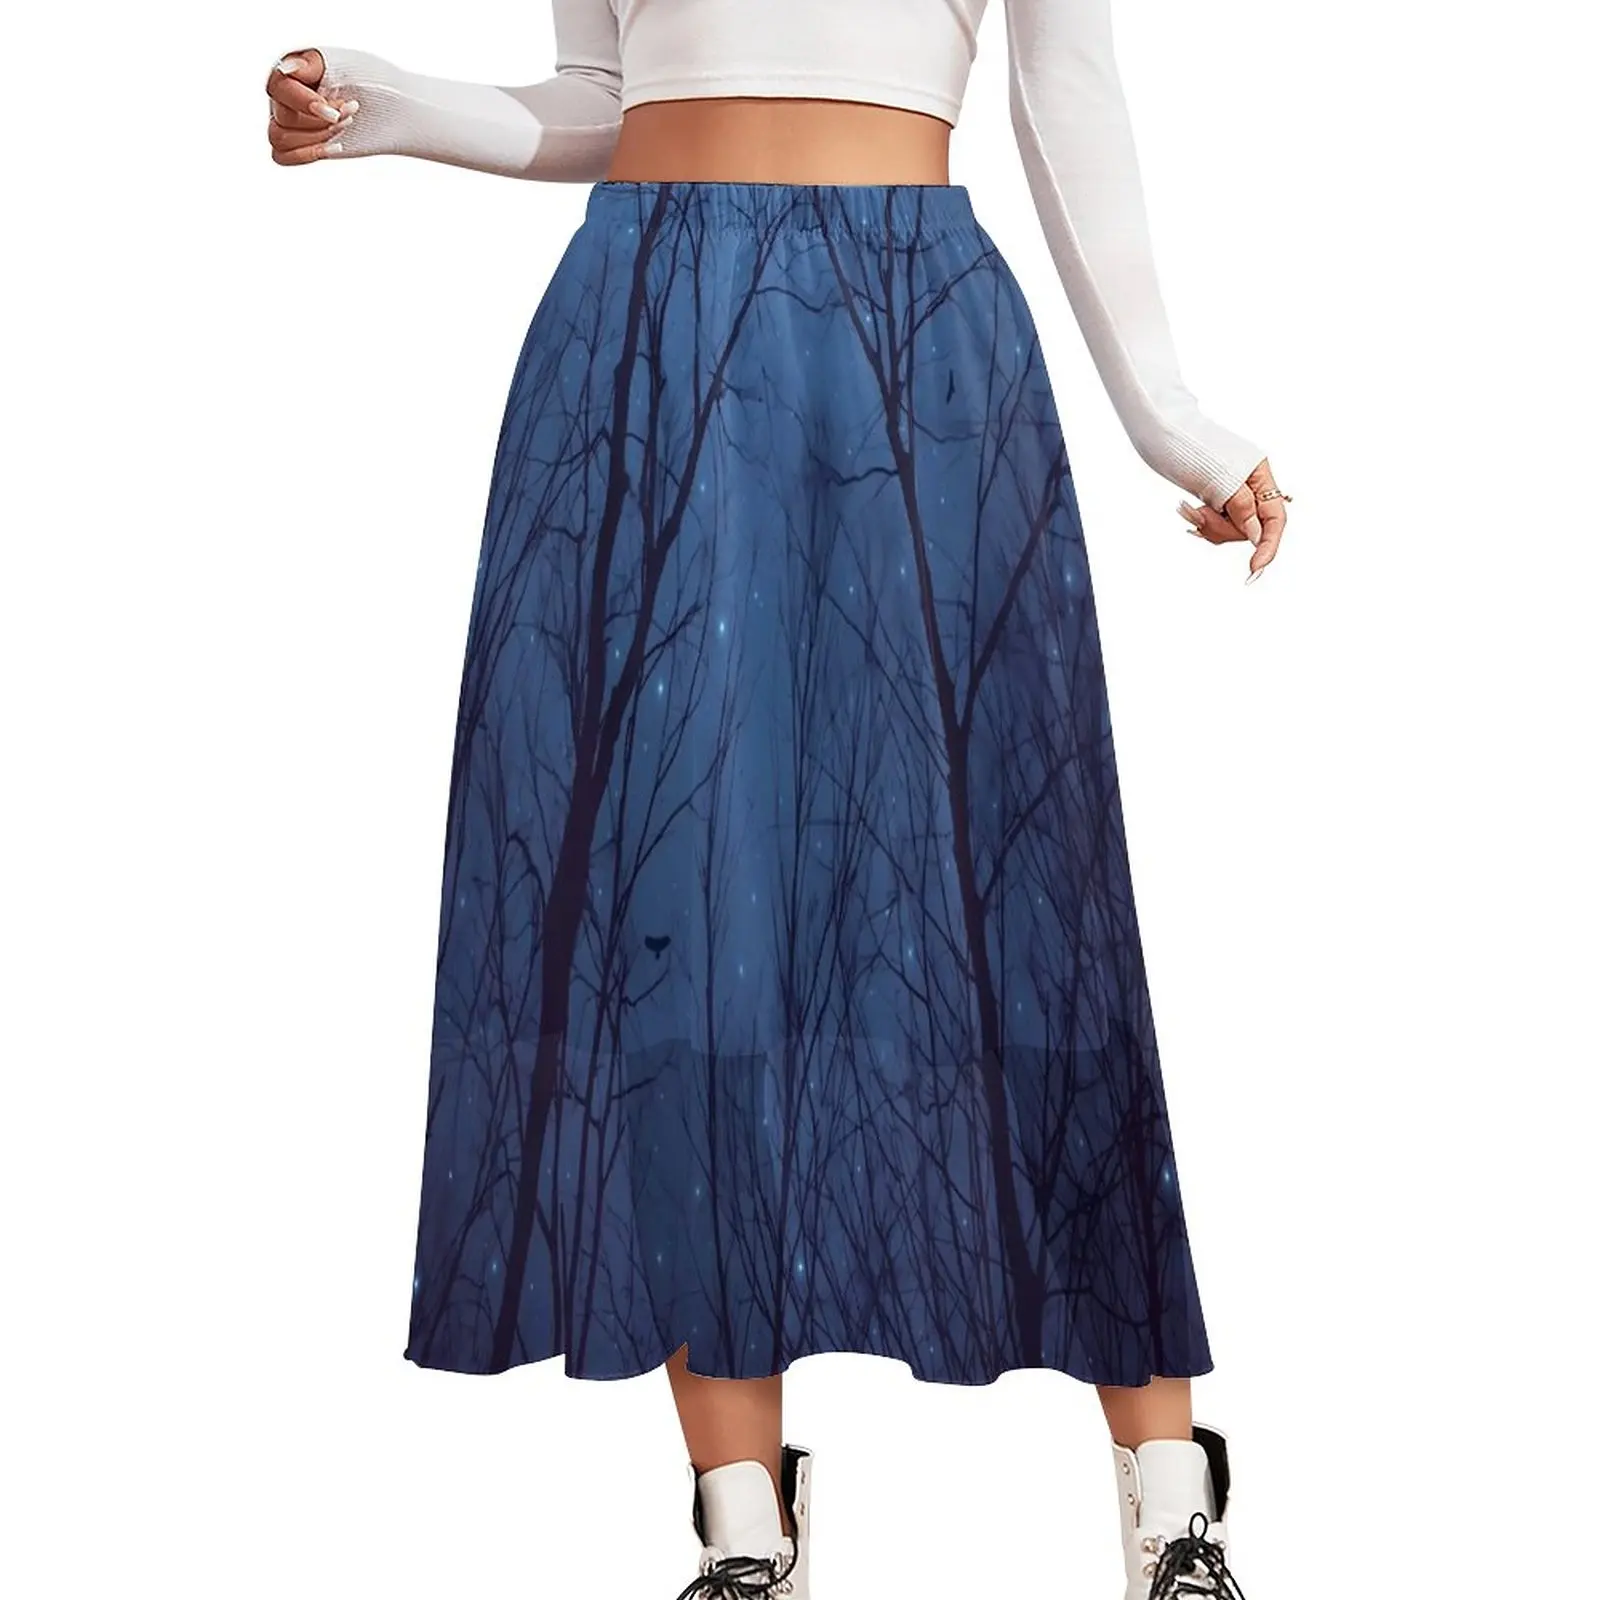 

Шифоновая юбка с принтом леса, длинные юбки в уличном стиле с надписью «Love The Stars», Женская юбка А-силуэта, графическая одежда в подарок